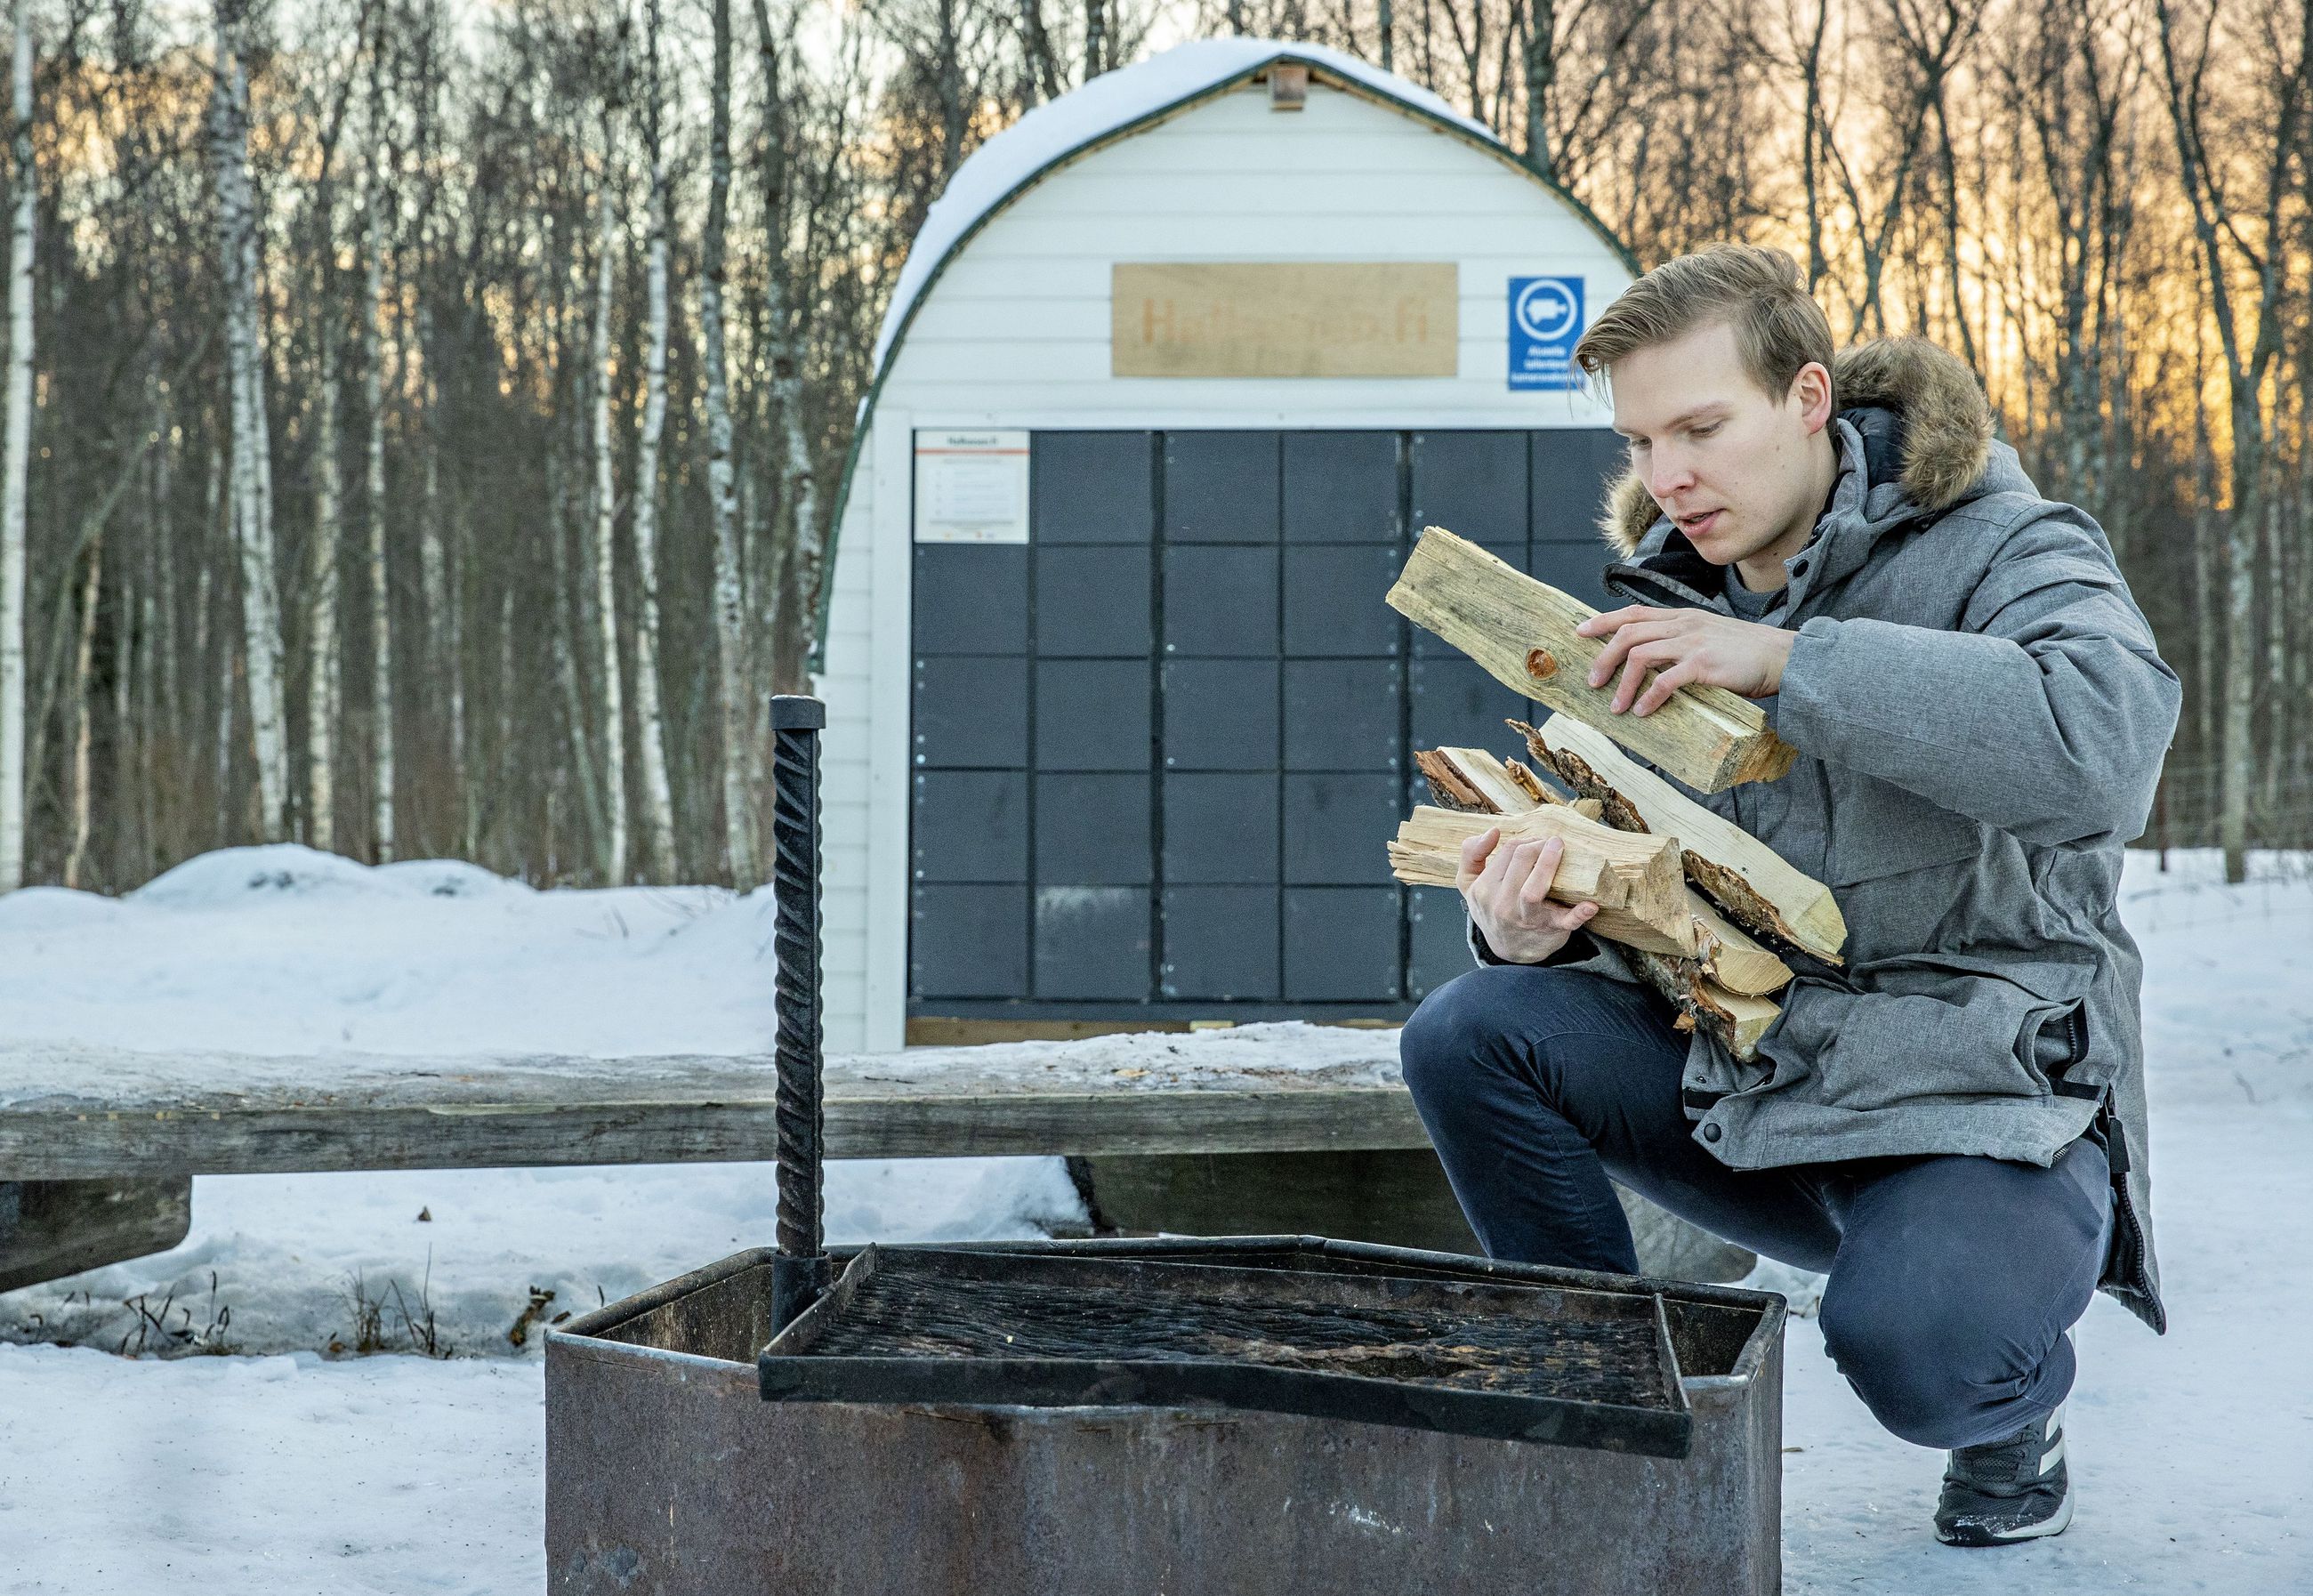 Nuotiopuut käyvät kaupaksi – Oulun Hietasaaren nuotiopaikan tuore  halkoautomaatti on toiminut hyvin ja kerännyt kehuja käyttäjiltä | Kaleva